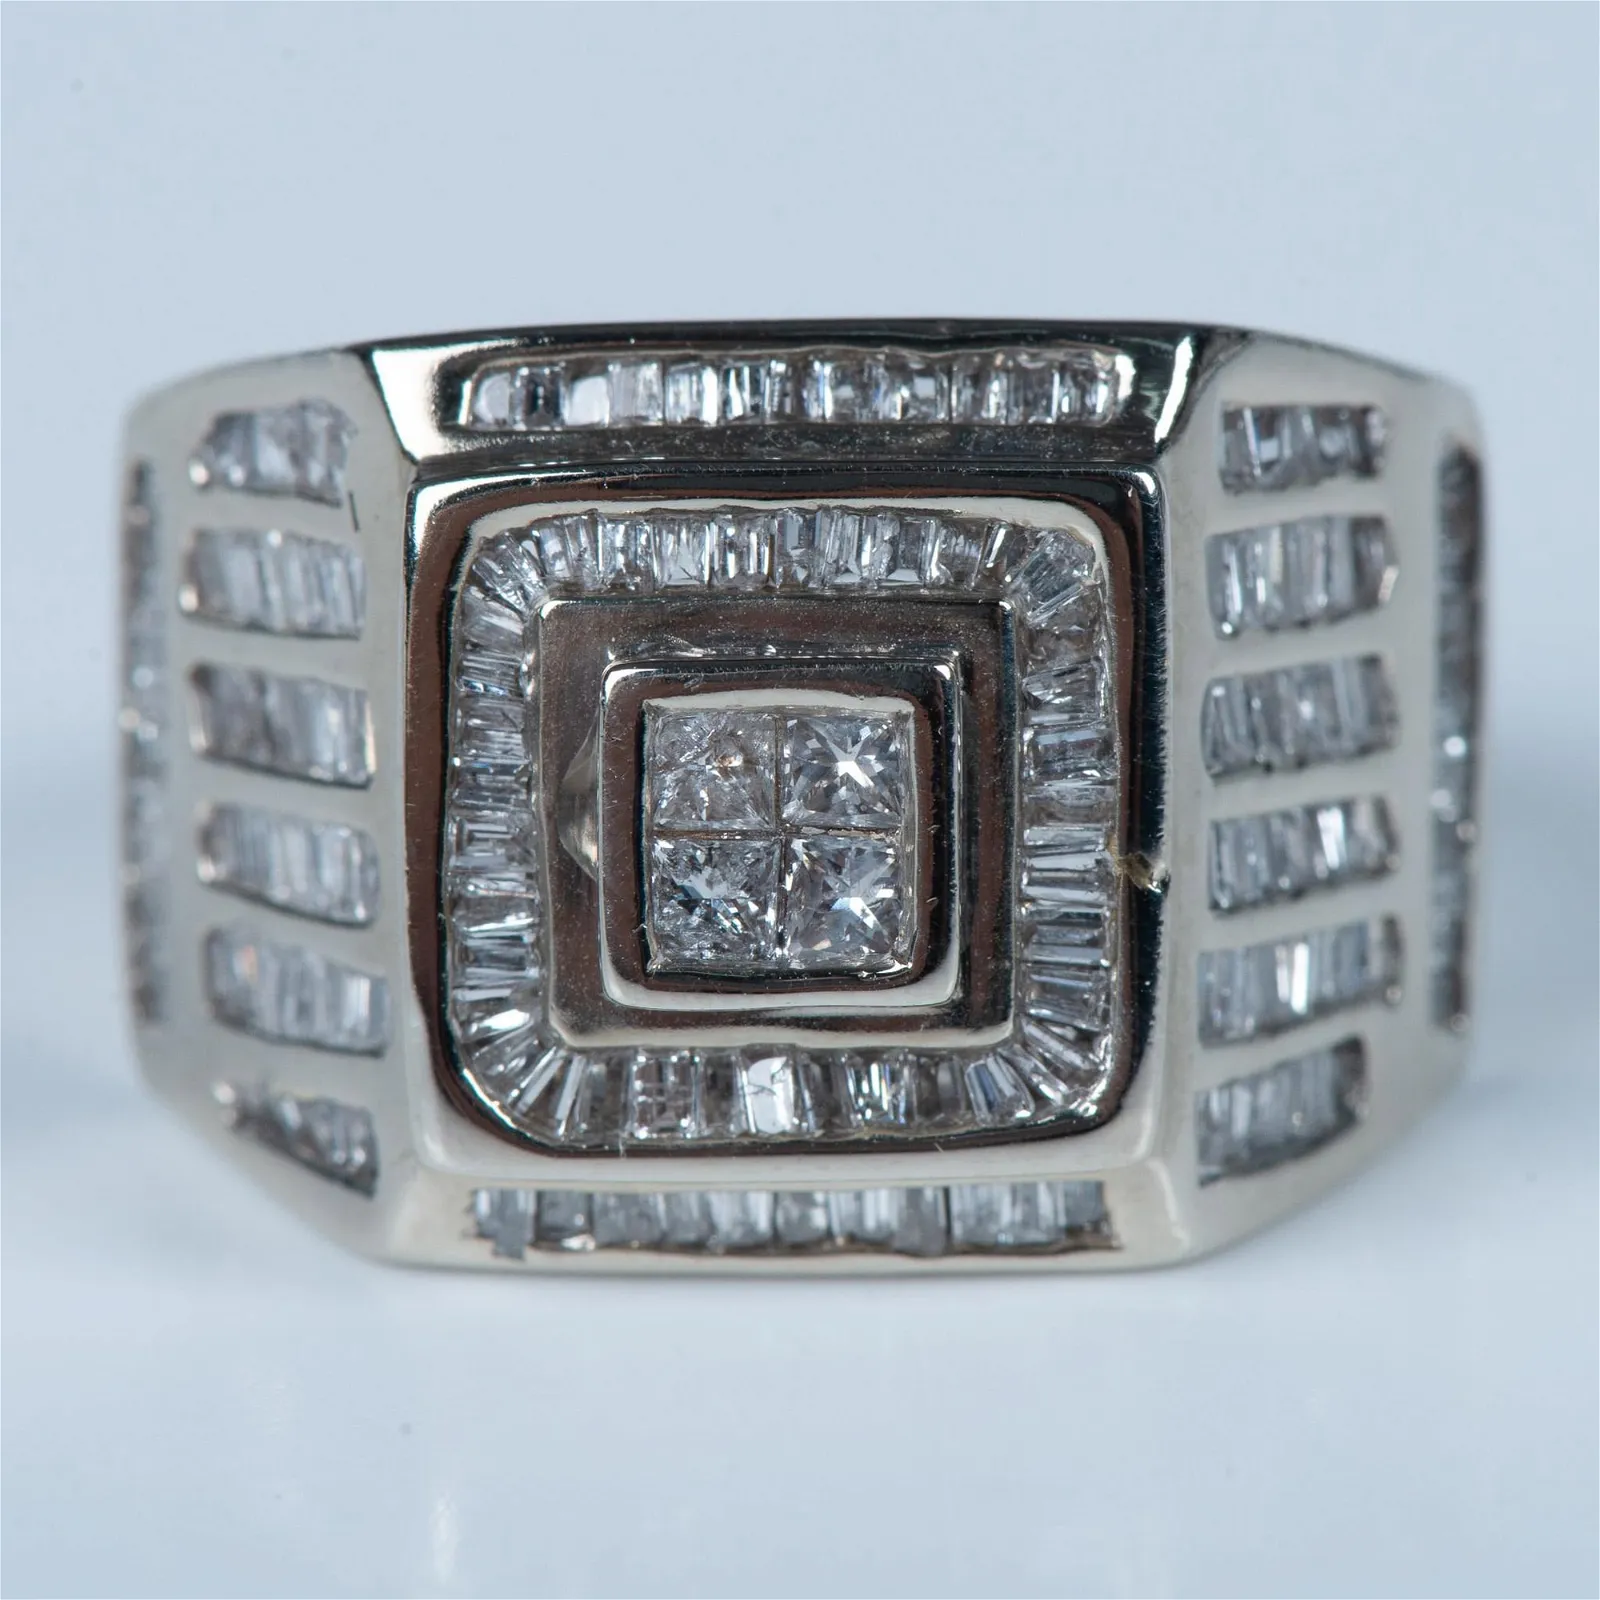 Striking 14K White Gold and 132-Diamond Ring